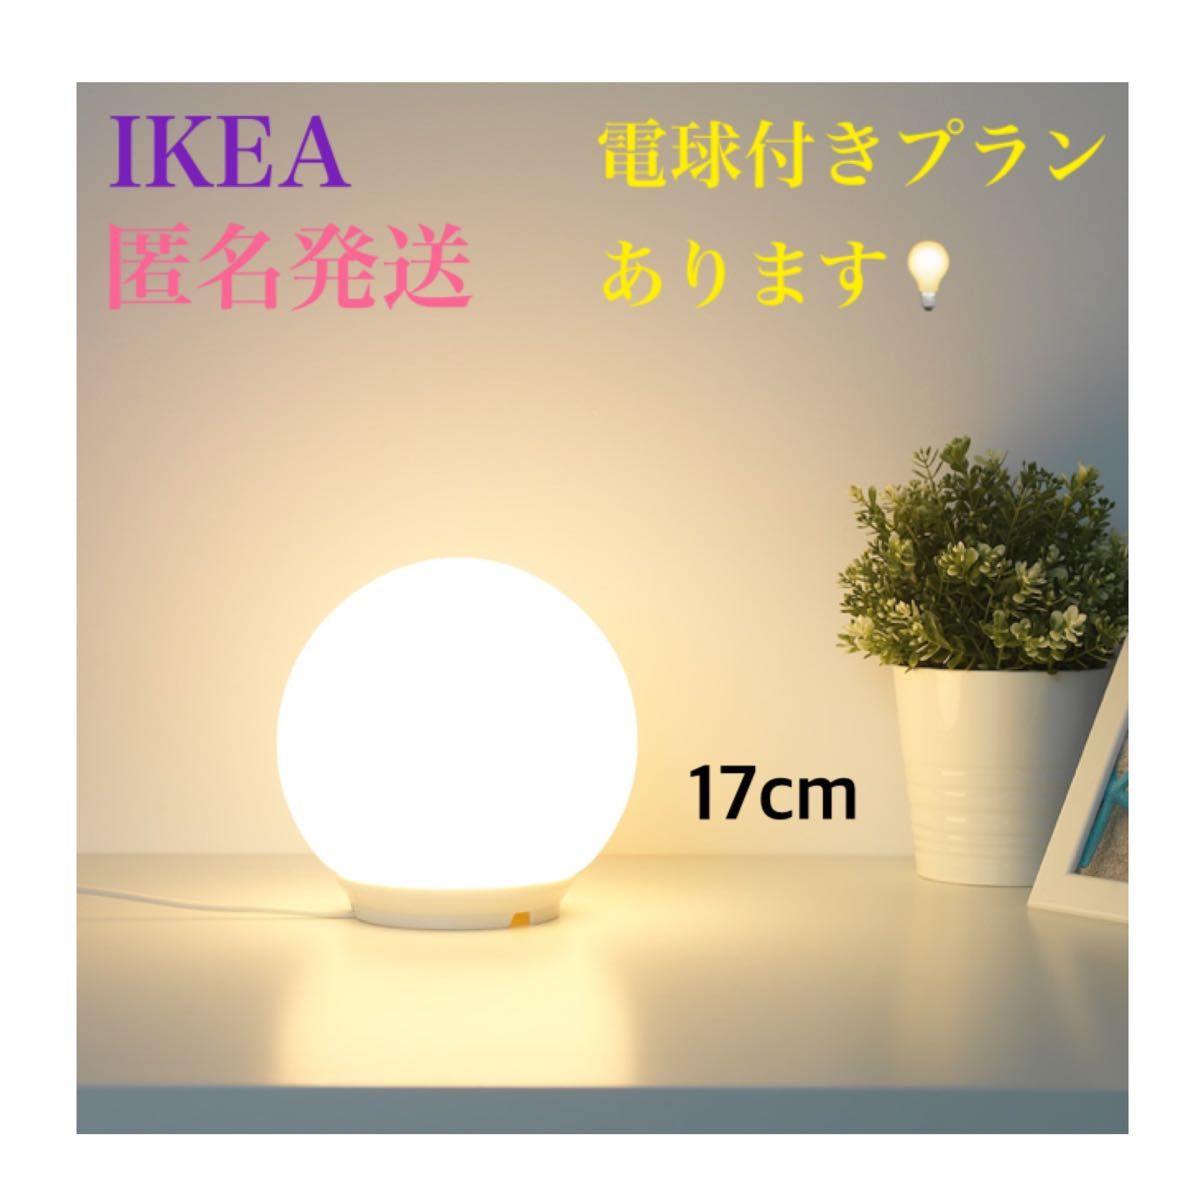 【新品】 IKEA イケア ファード テーブルランプ 17cm フロアライト テーブルライト 間接照明 電球付きプランあります！